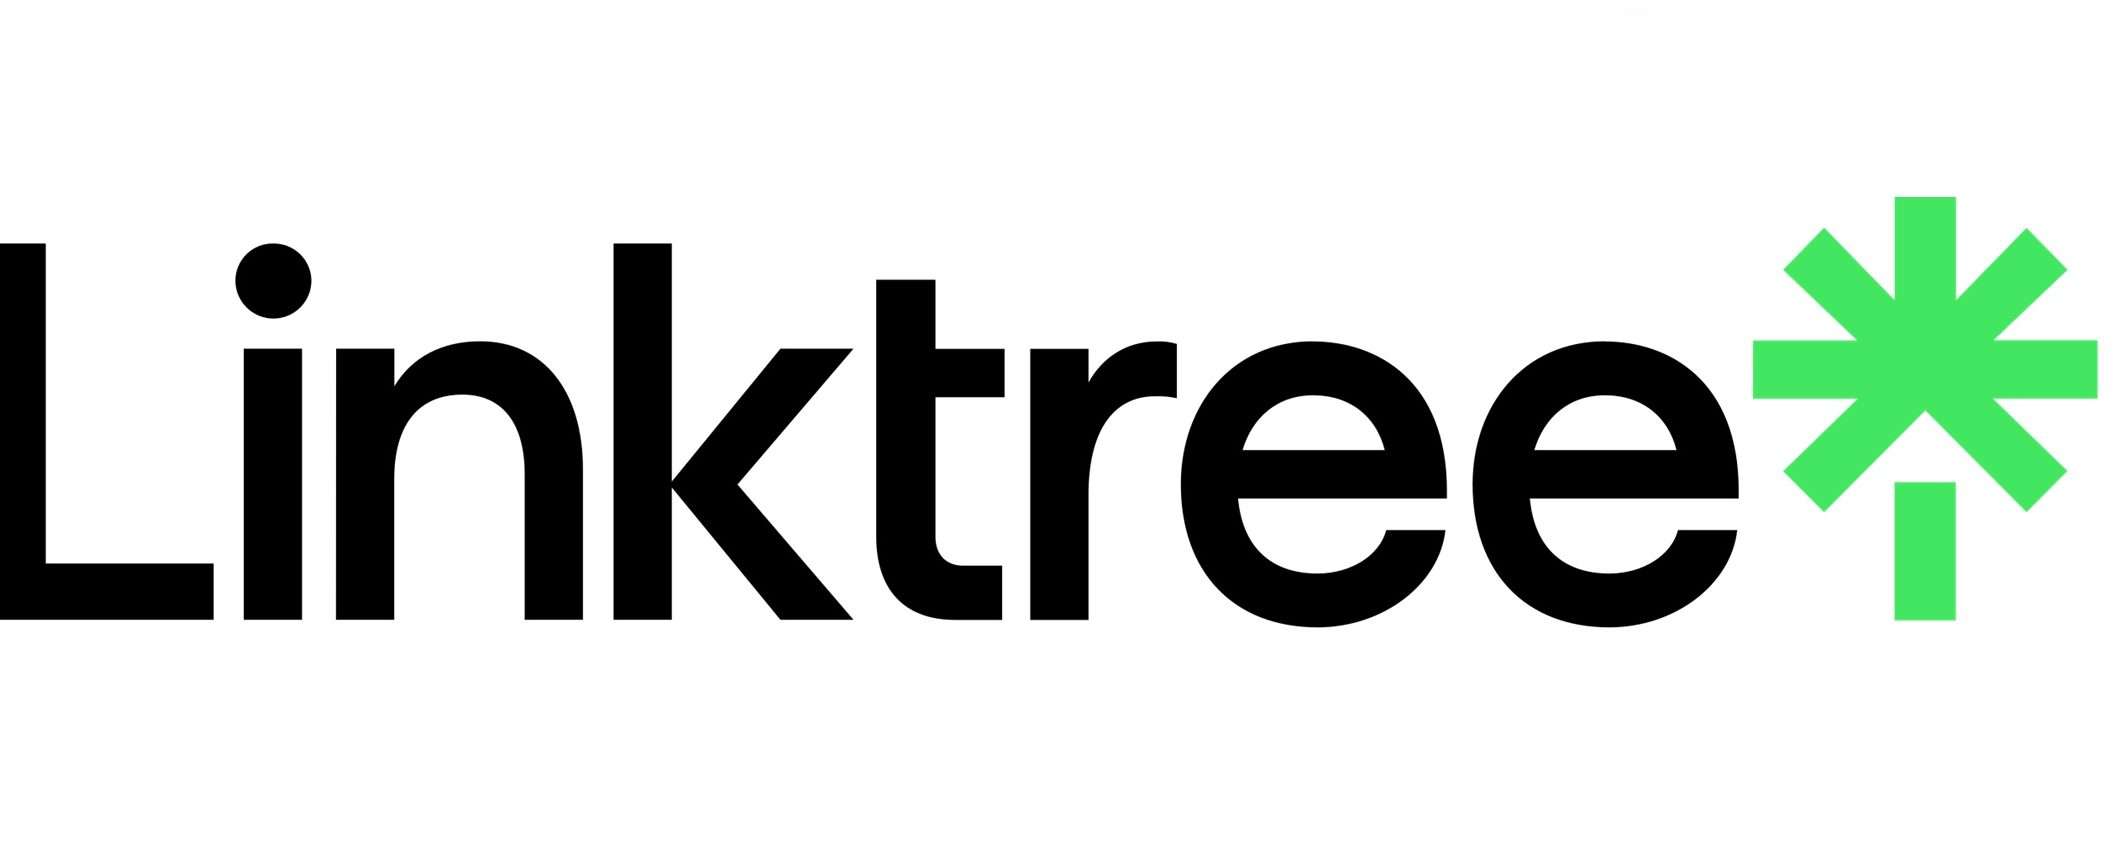 Linktree introduce nuove funzioni per pianificare e archiviare link